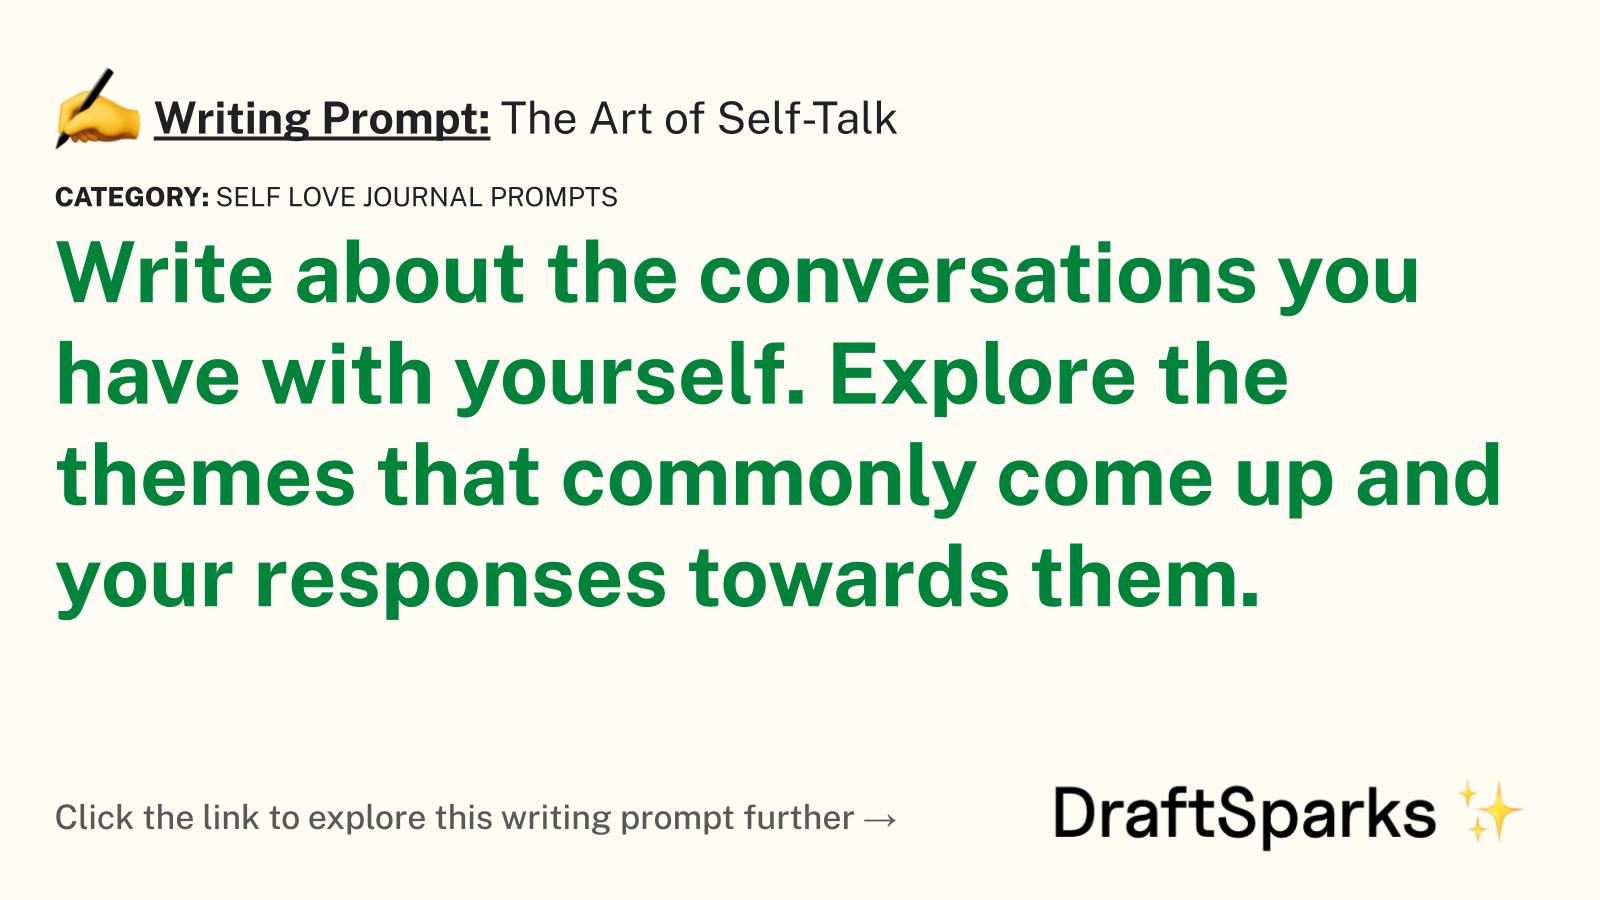 The Art of Self-Talk